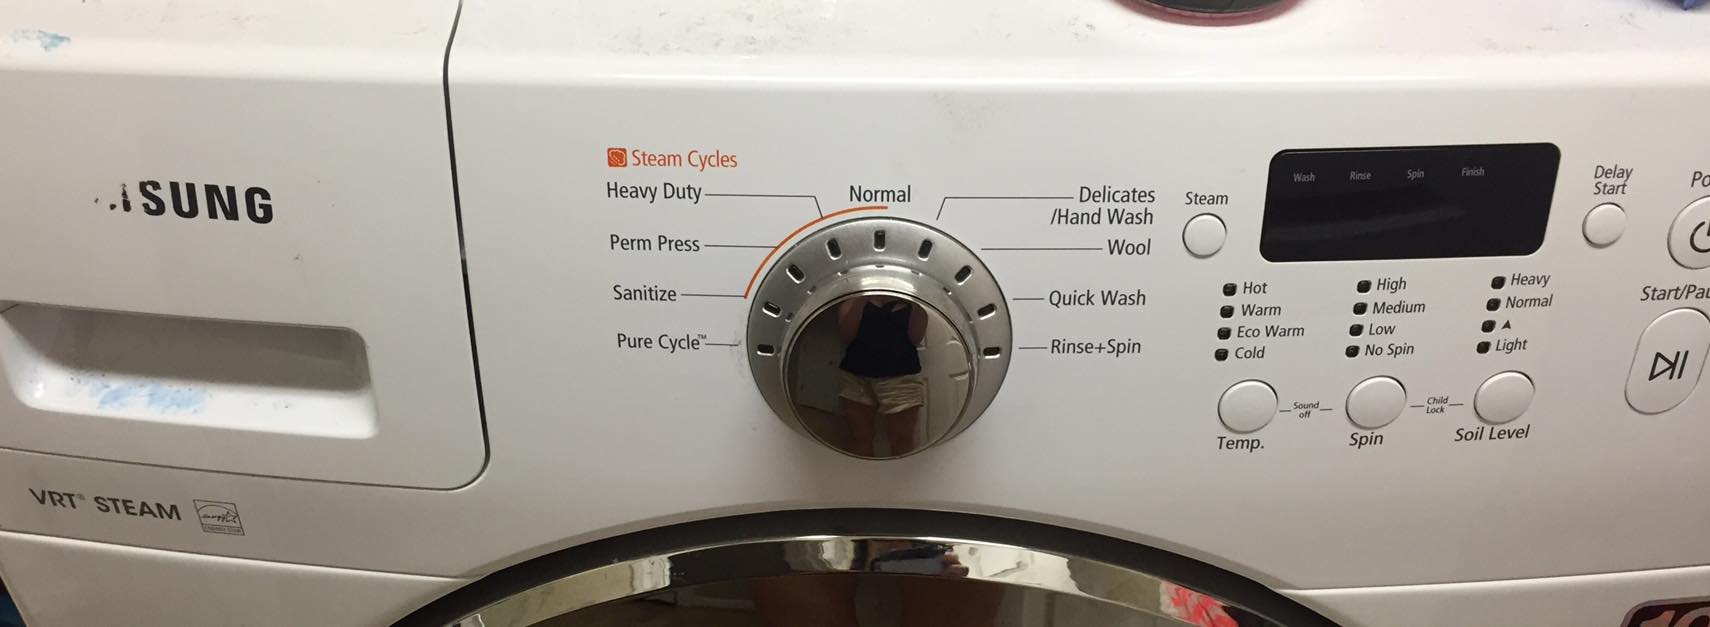 что такое steam в стиральной машине lg это функция фото 90